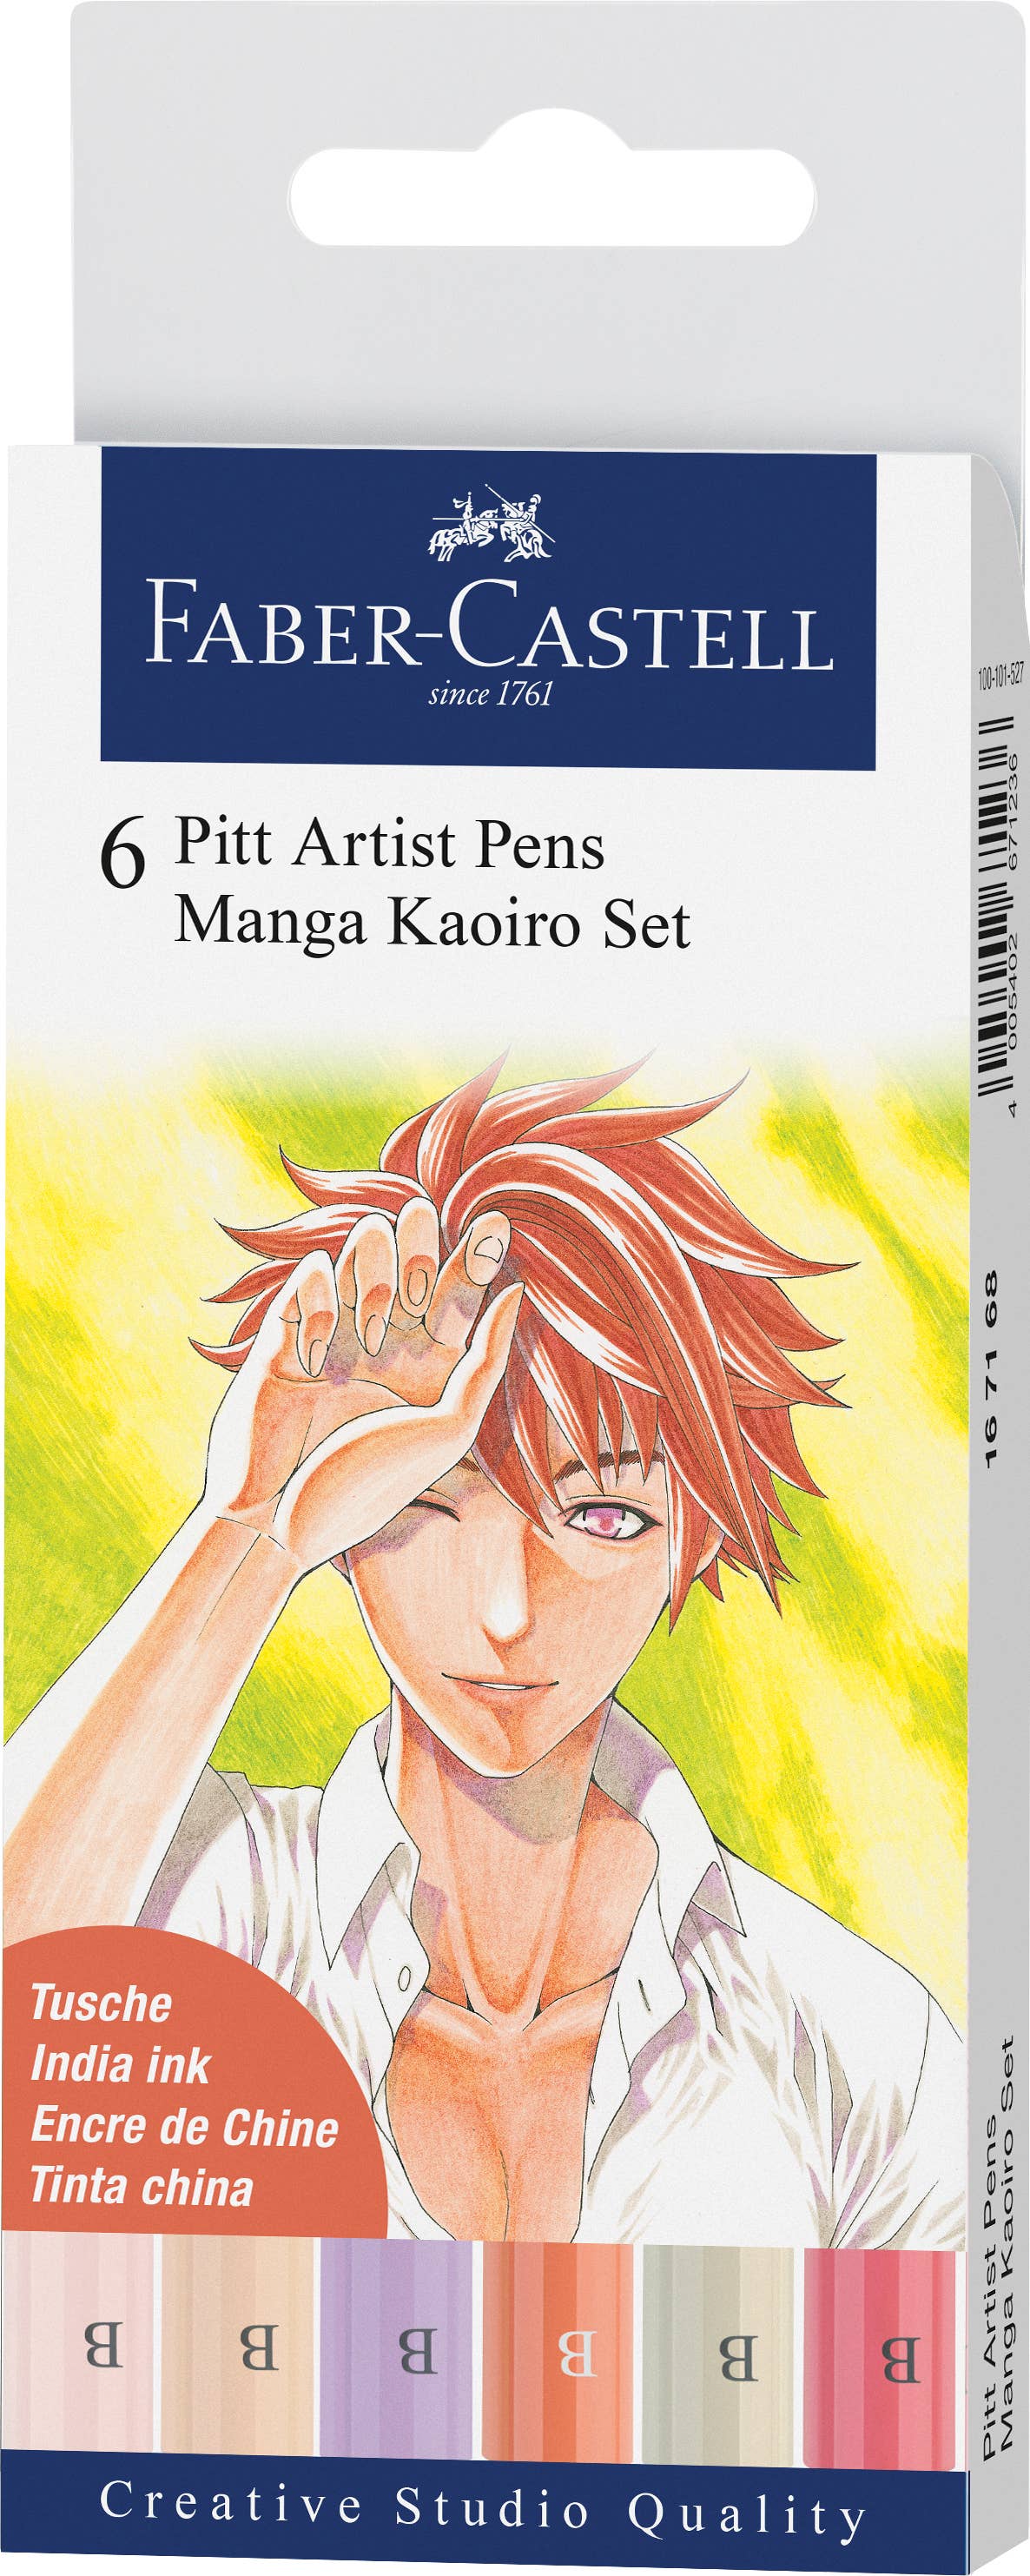 Pitt Artist Pen, Manga Kaoiro Set - Wallet of 6